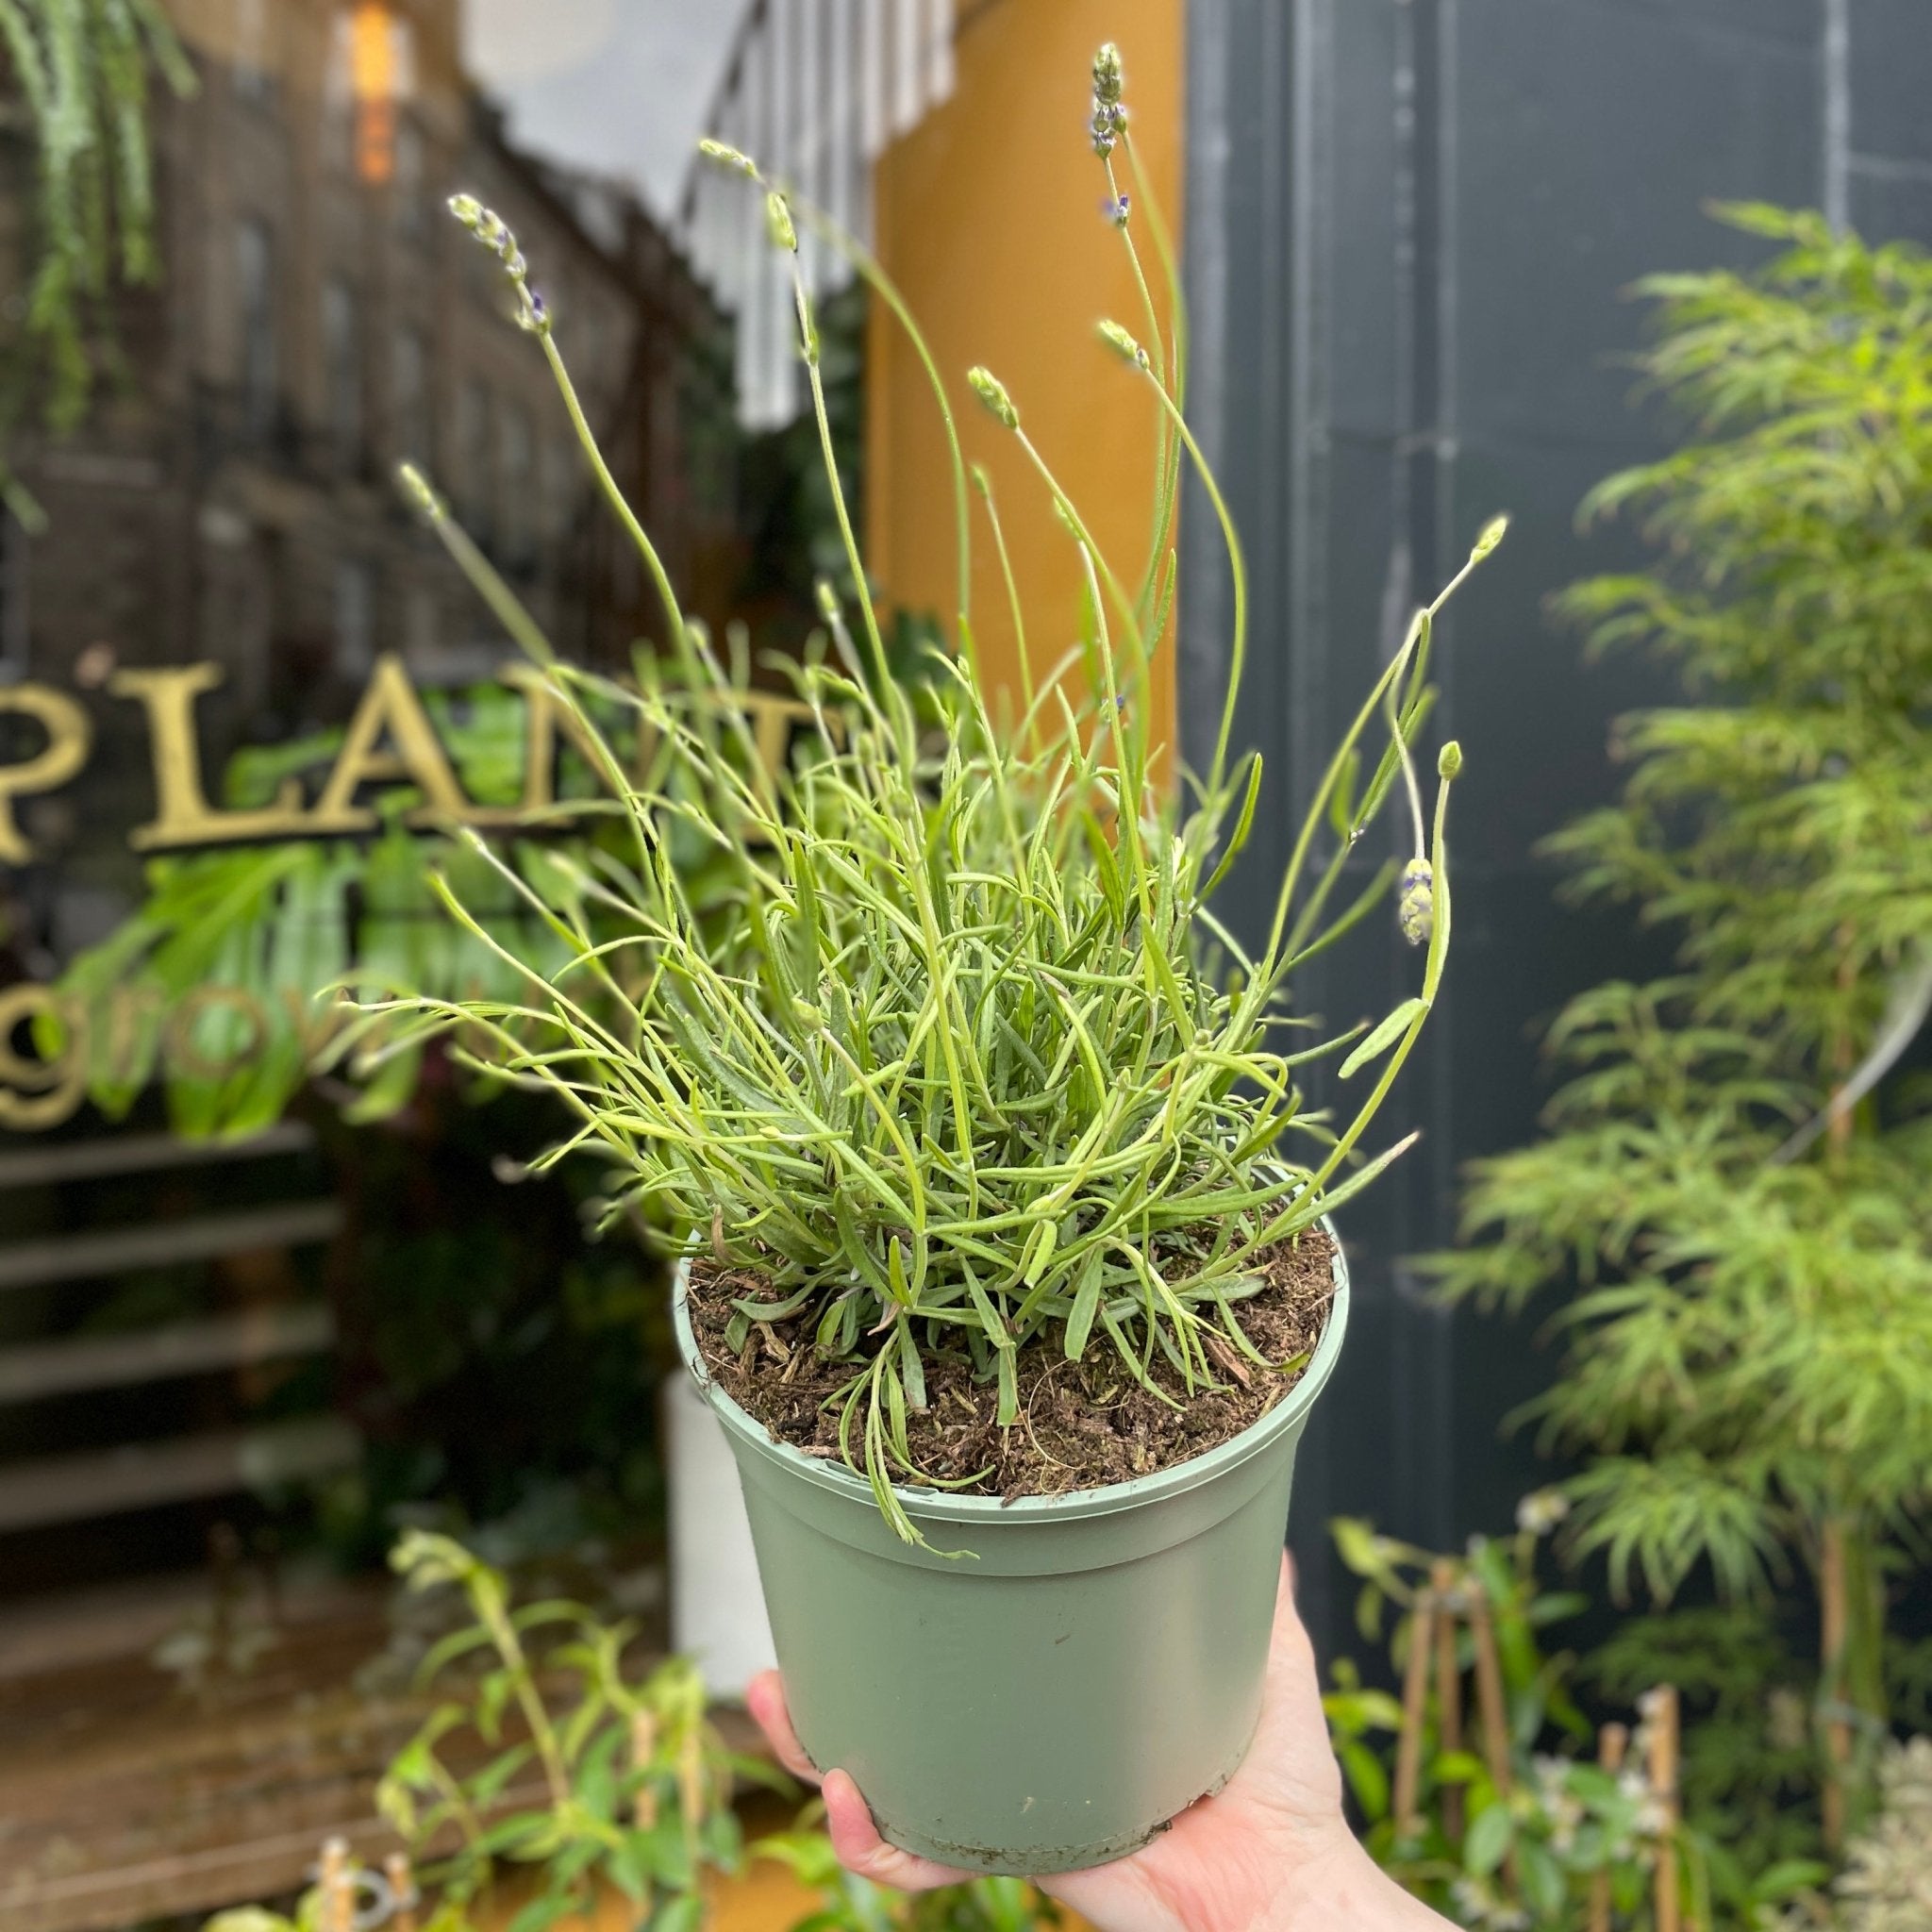 Lavandula angustifolia 'Hidcote' - grow urban. UK